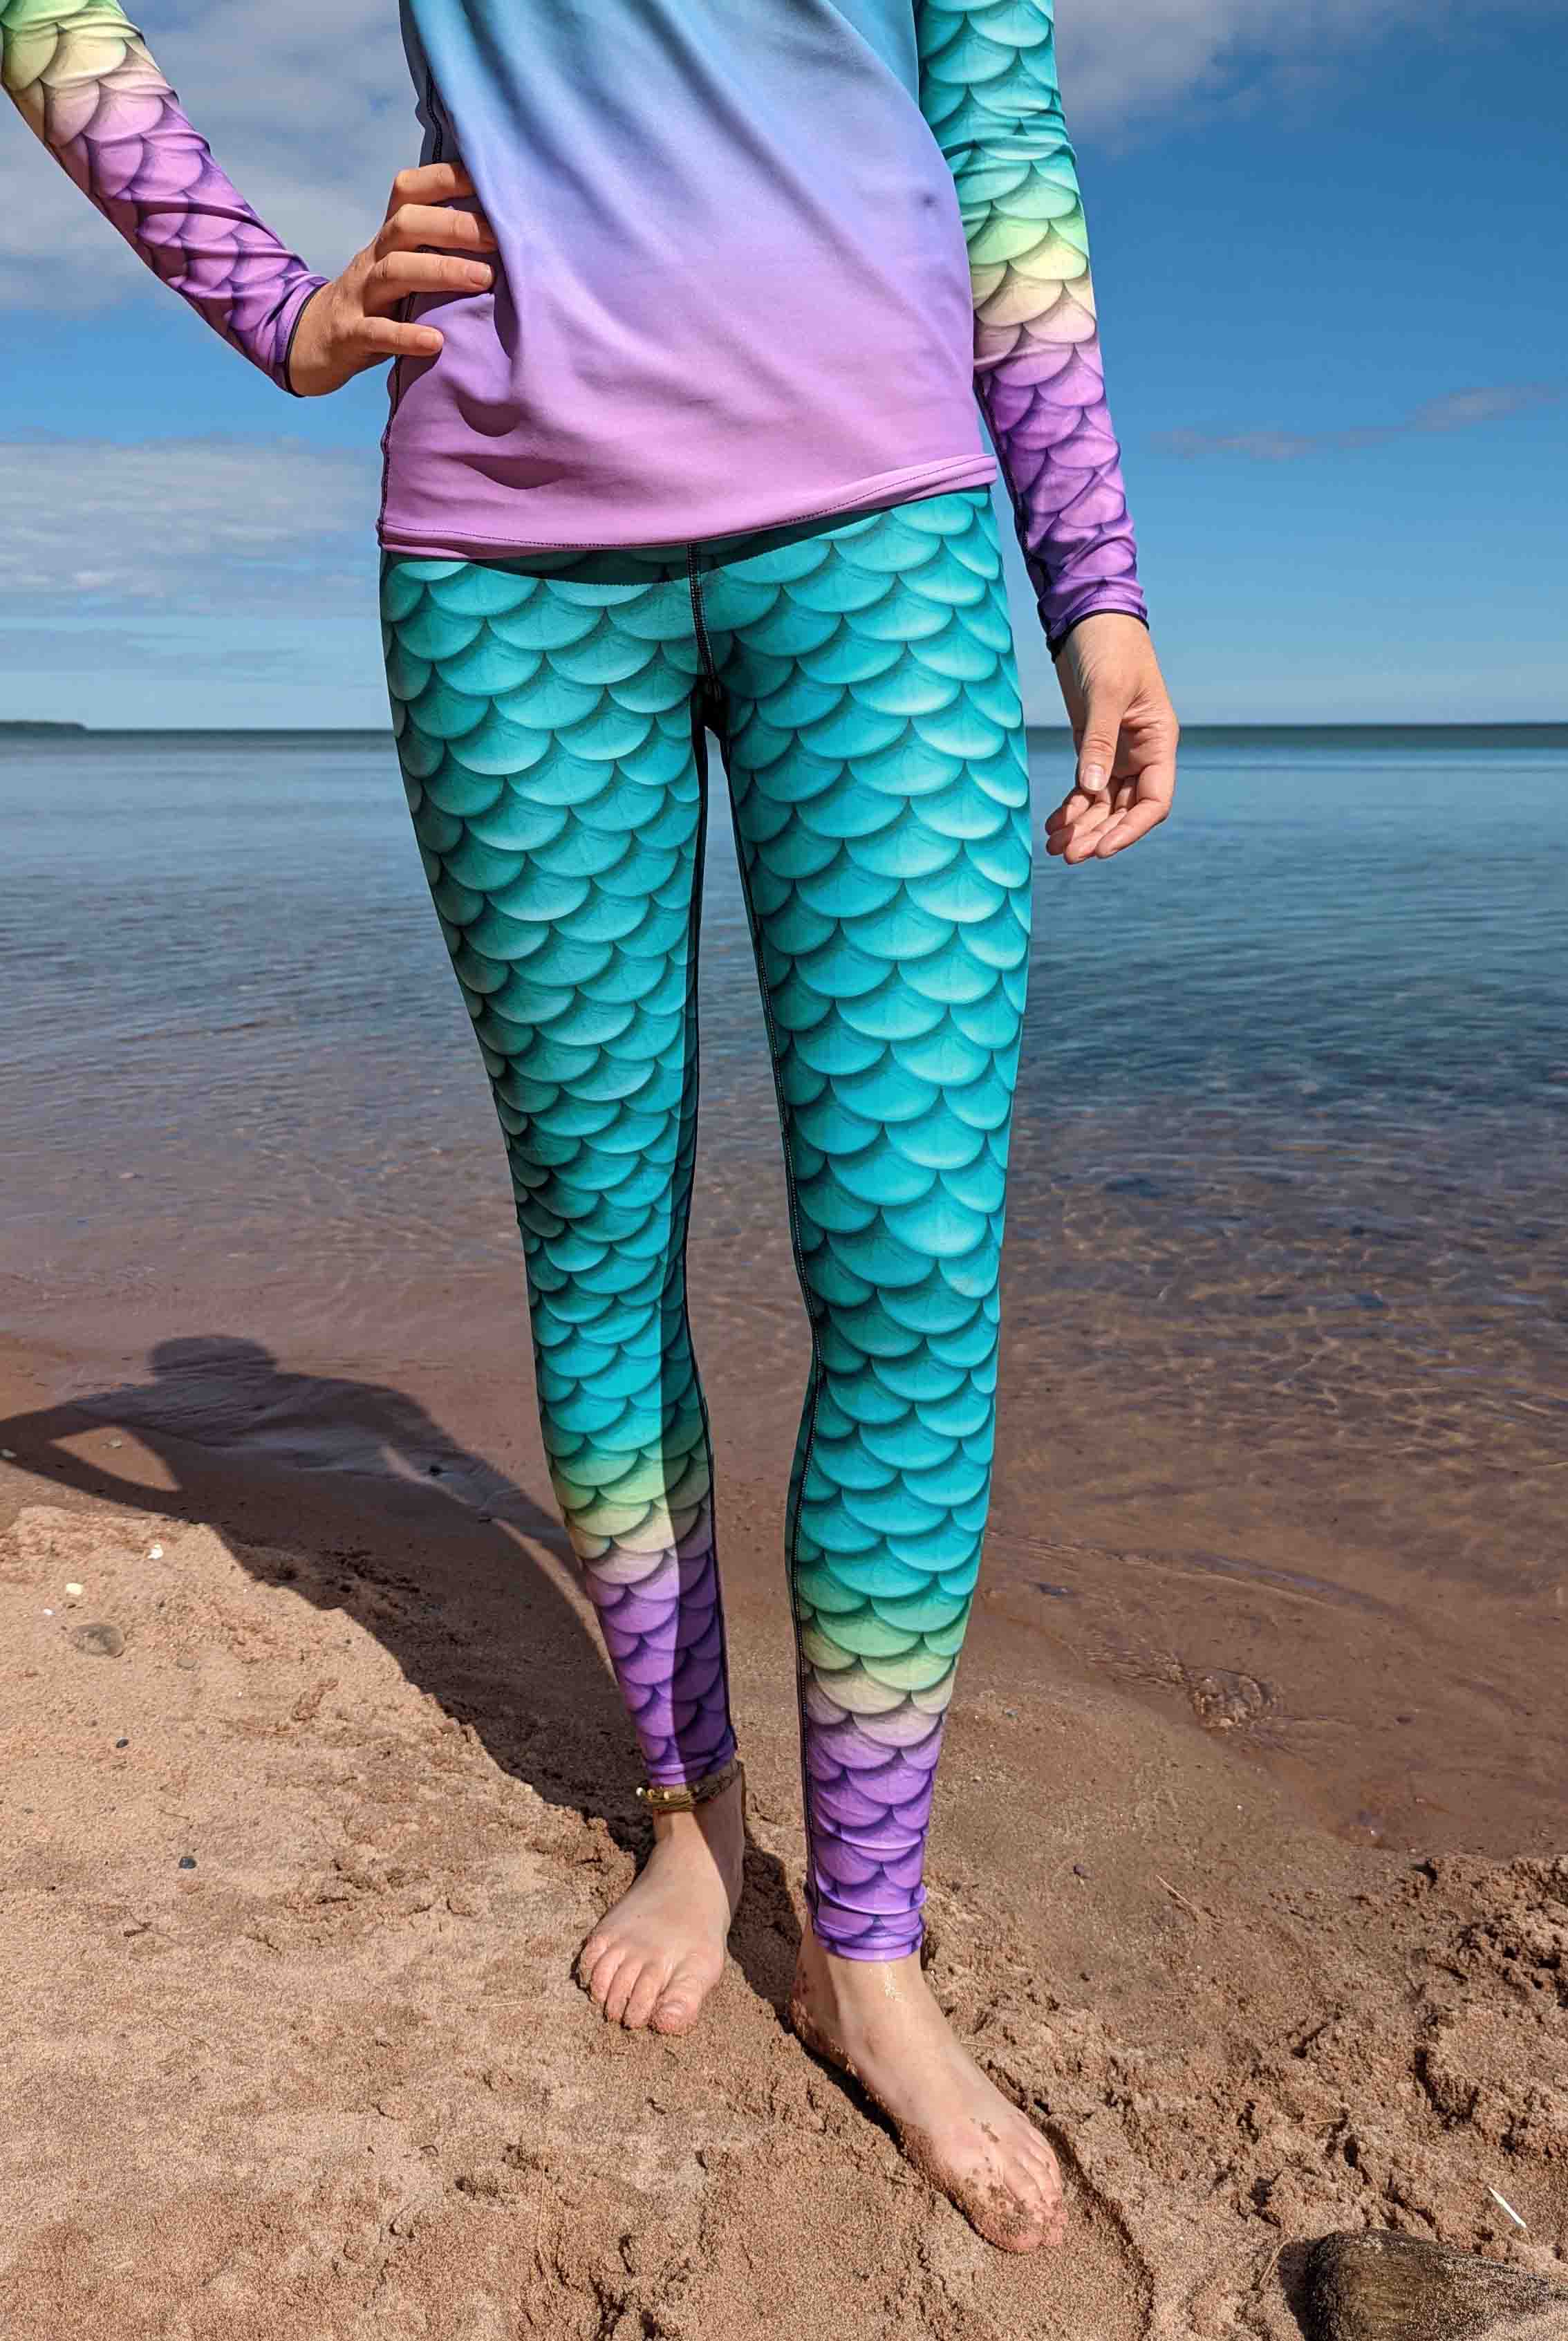 Mermaid Tights -  Canada